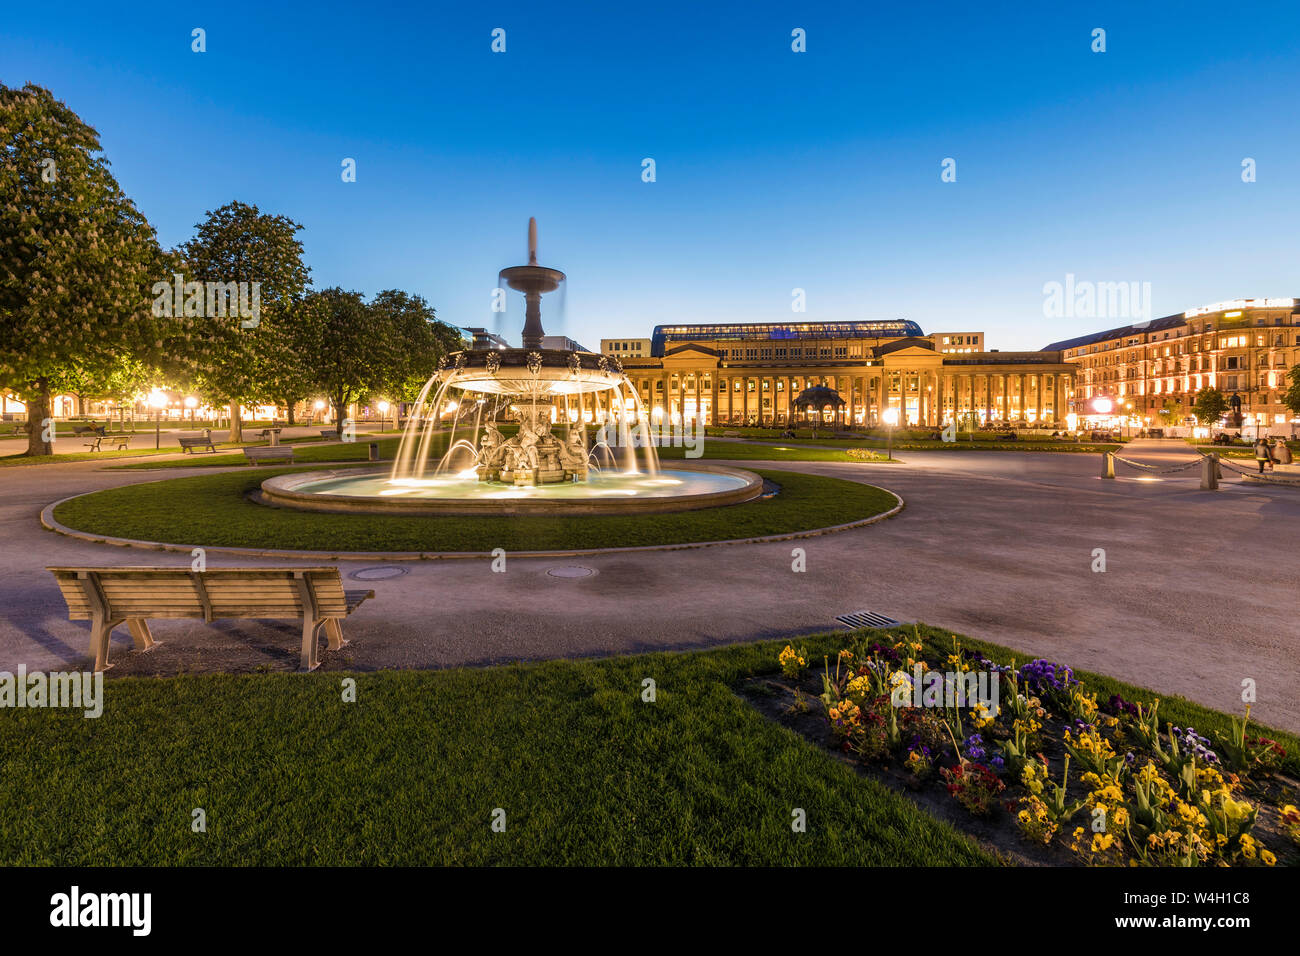 La place du palais avec une fontaine en face de Koenigsbau au crépuscule, Stuttgart, Allemagne Banque D'Images